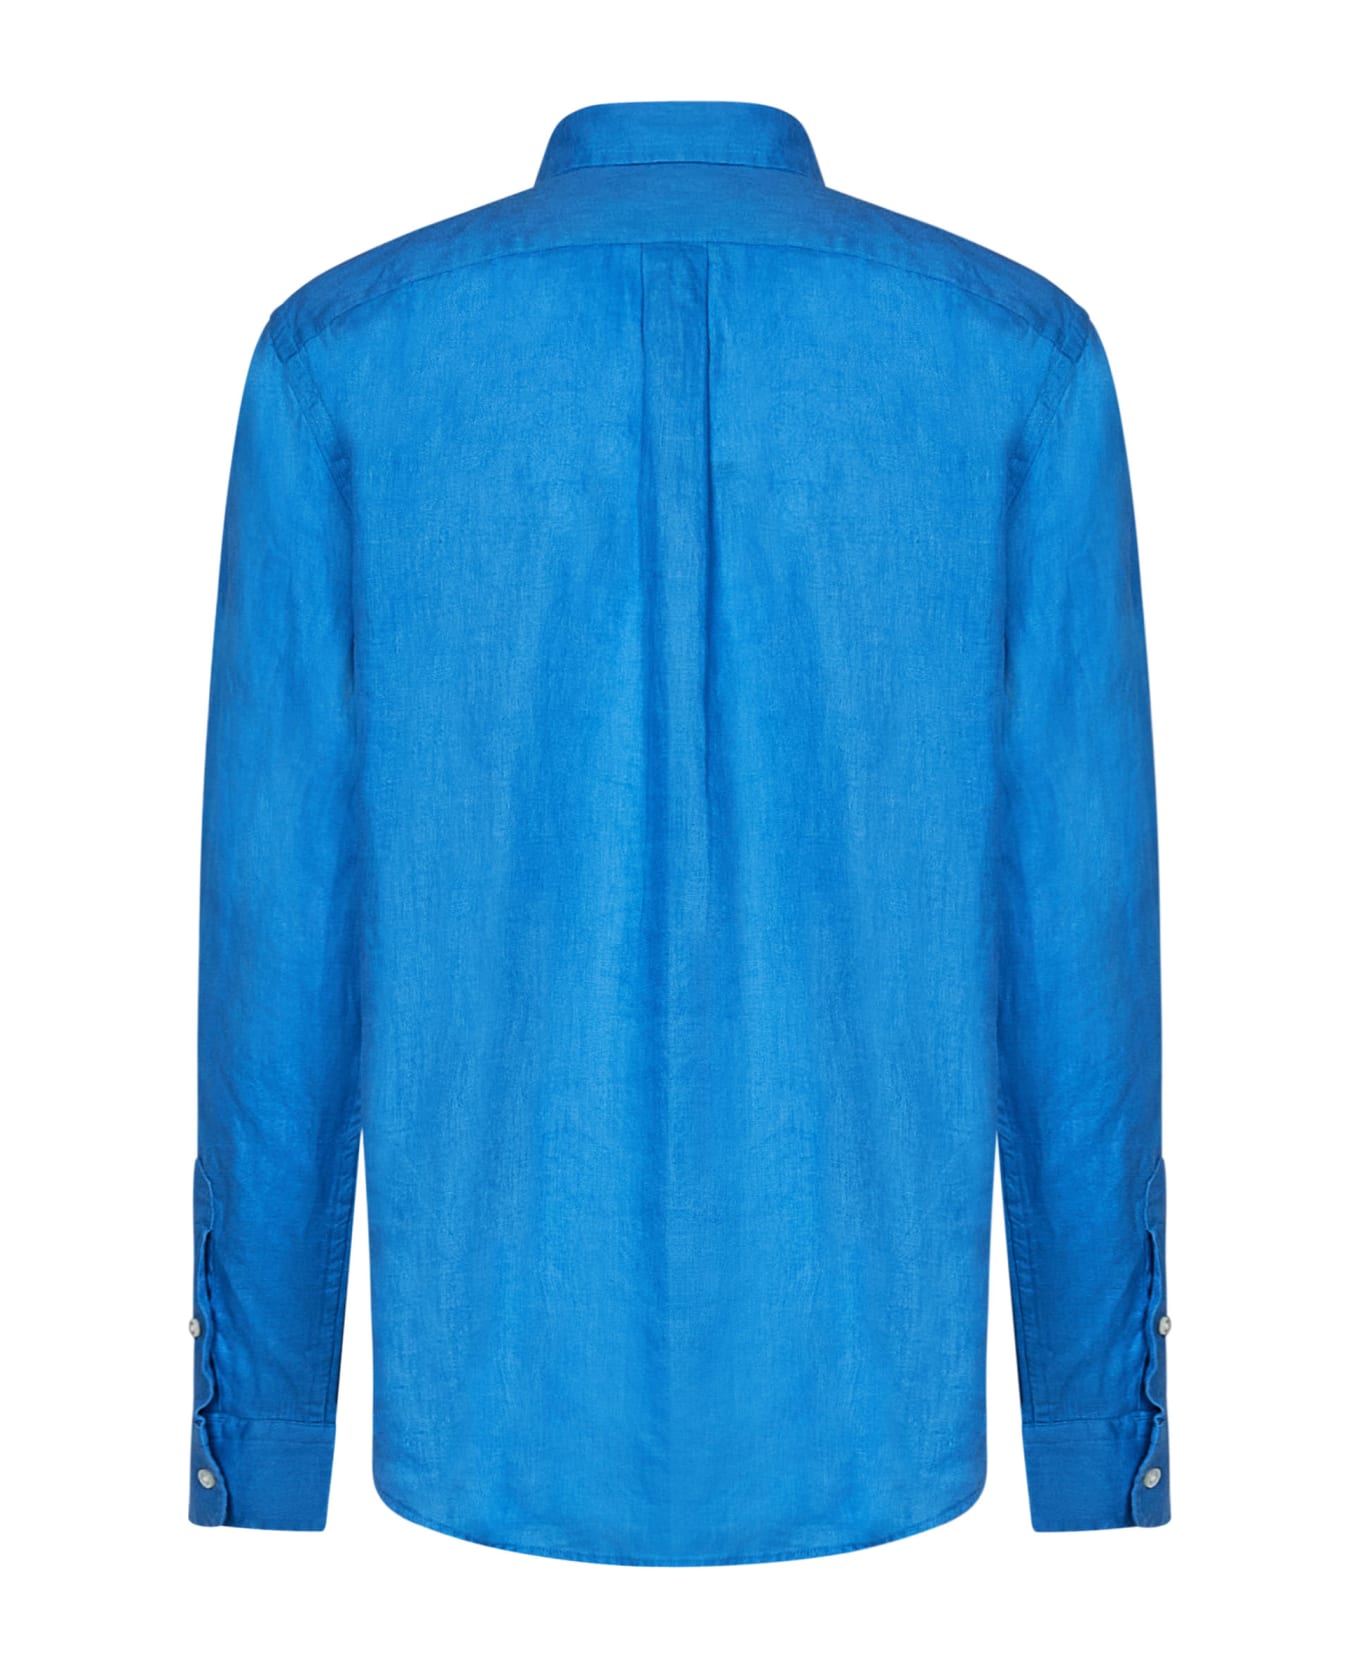 Polo Ralph Lauren Shirt Polo Ralph Lauren - BLUETTE シャツ